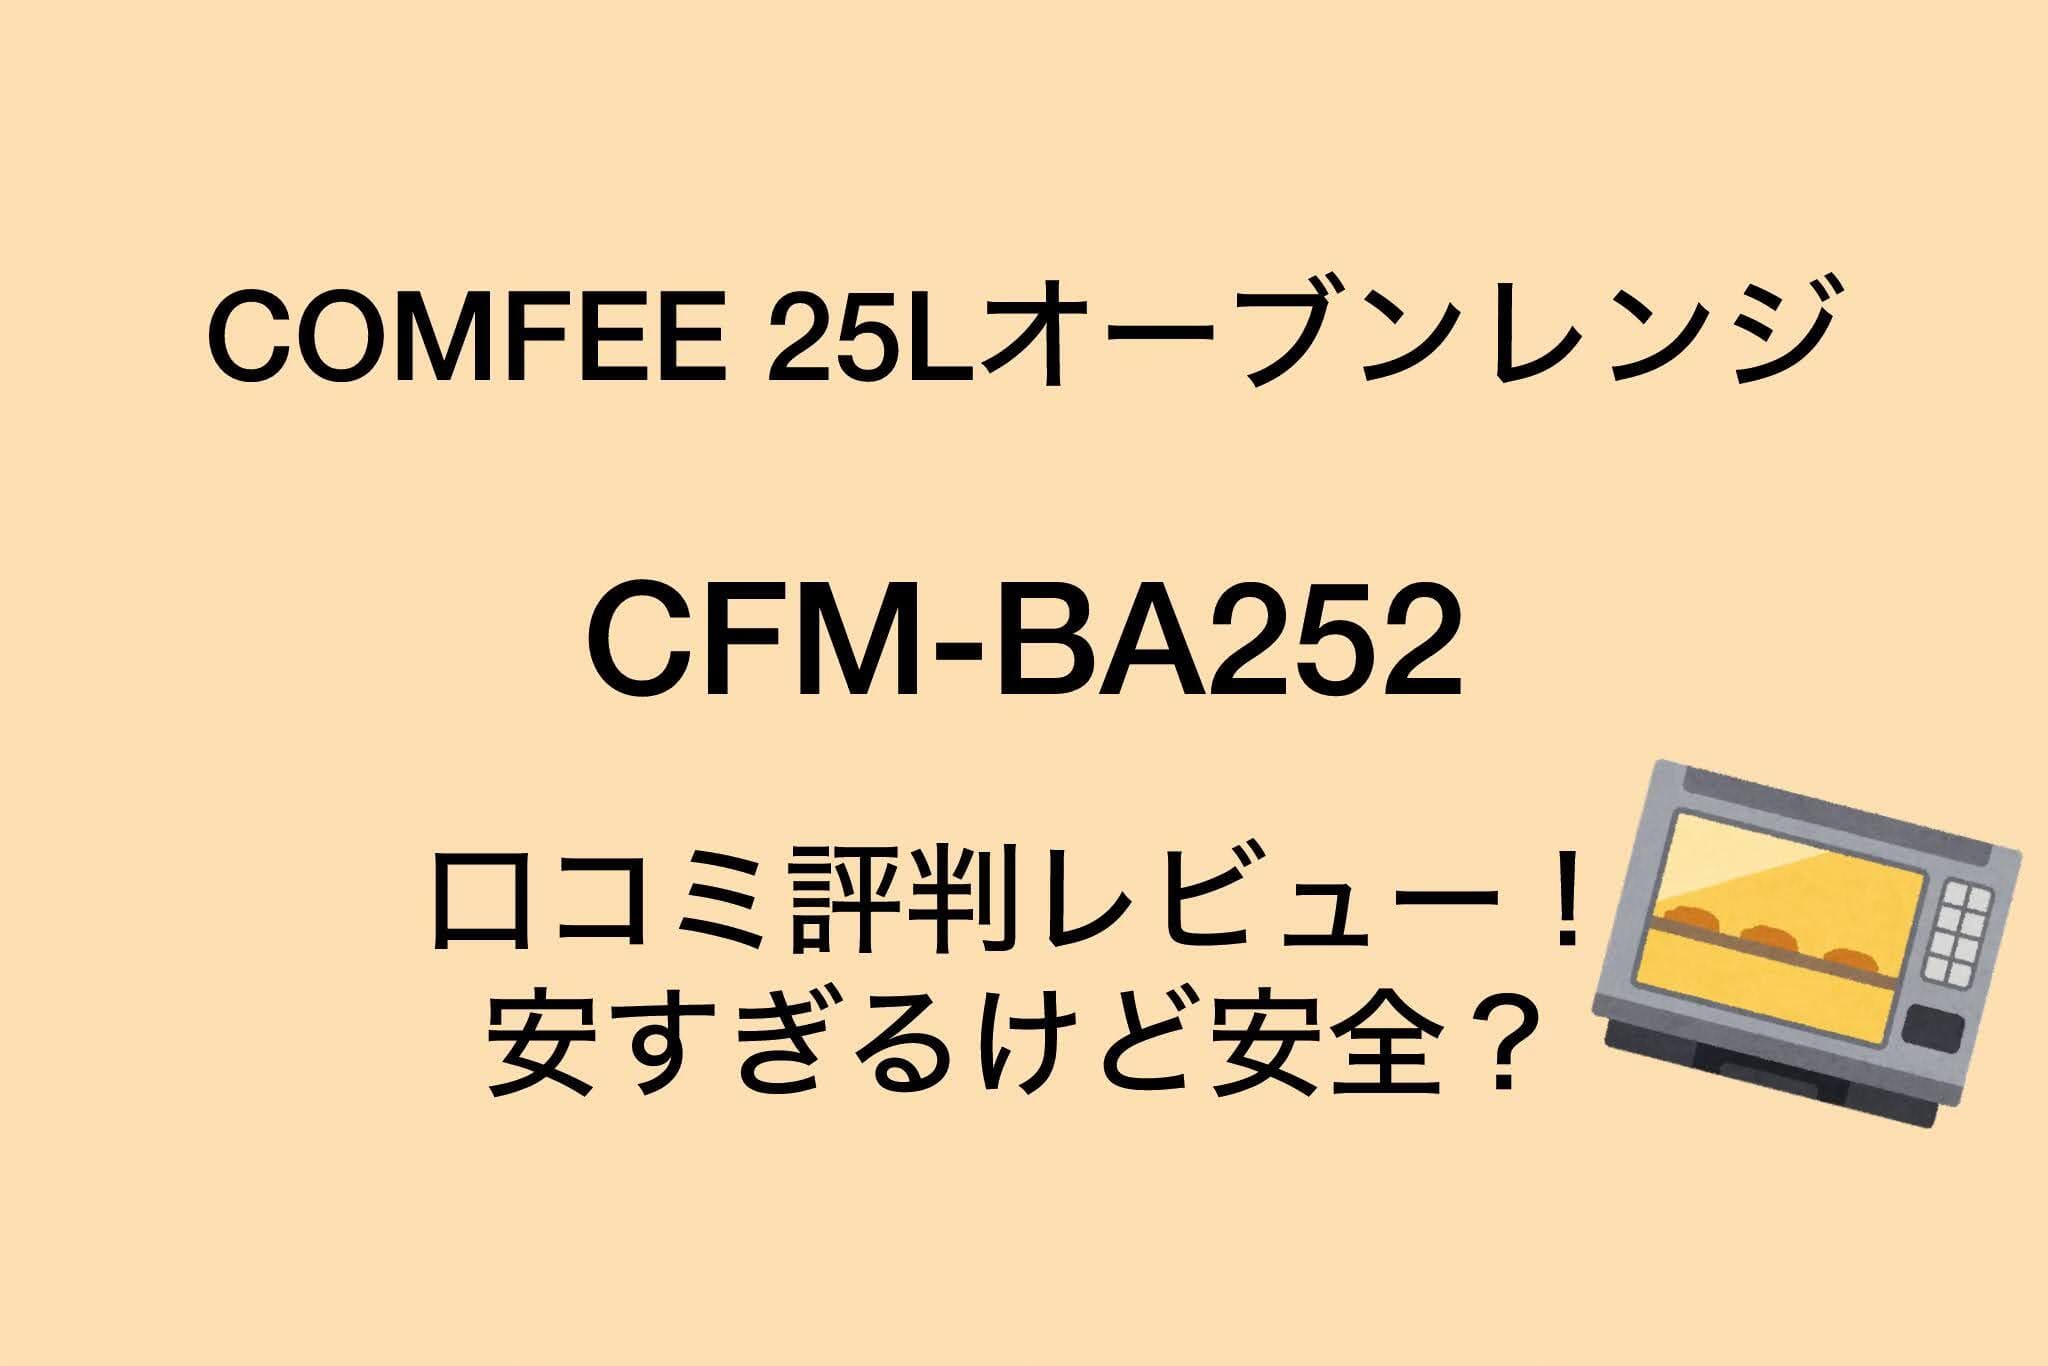 COMFEE 25Lオーブンレンジの口コミ評判レビュー！CFM-BA252